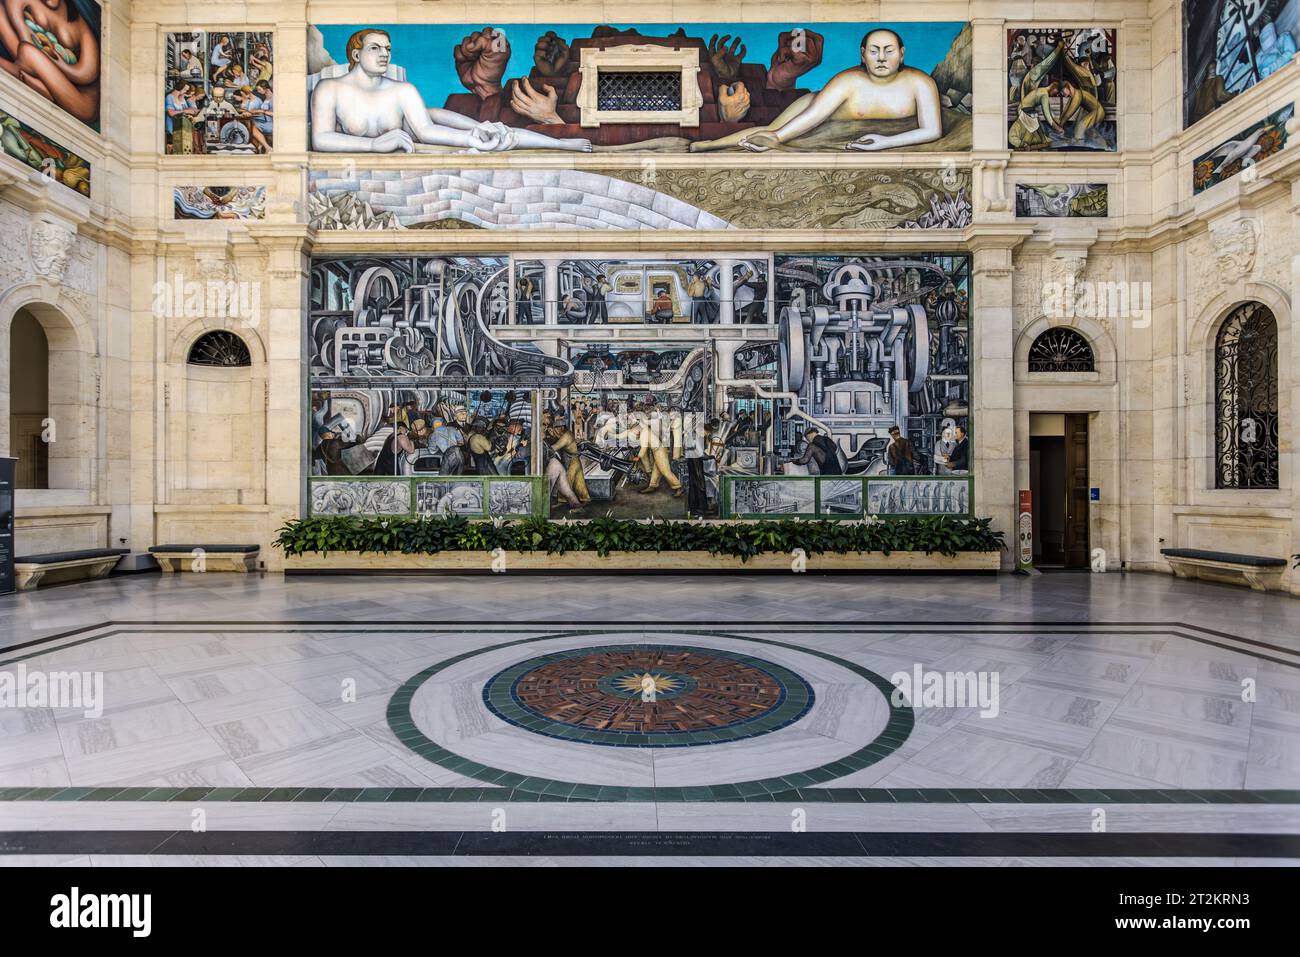 Rivera court au Detroit Institute of Arts Les peintures murales de l'industrie de Detroit (1932-1933) sont une série de fresques de l'artiste mexicain Diego Rivera, composée de vingt-sept panneaux représentant l'industrie à la Ford Motor Company et à Detroit, aux États-Unis. Detroit Industry Murals (1932-1933) est une série de fresques de l'artiste mexicain Diego Rivera, composée de vingt-sept panneaux. Un thème principal du cycle est la double qualité de l'homme, de la nature et de la technologie Banque D'Images